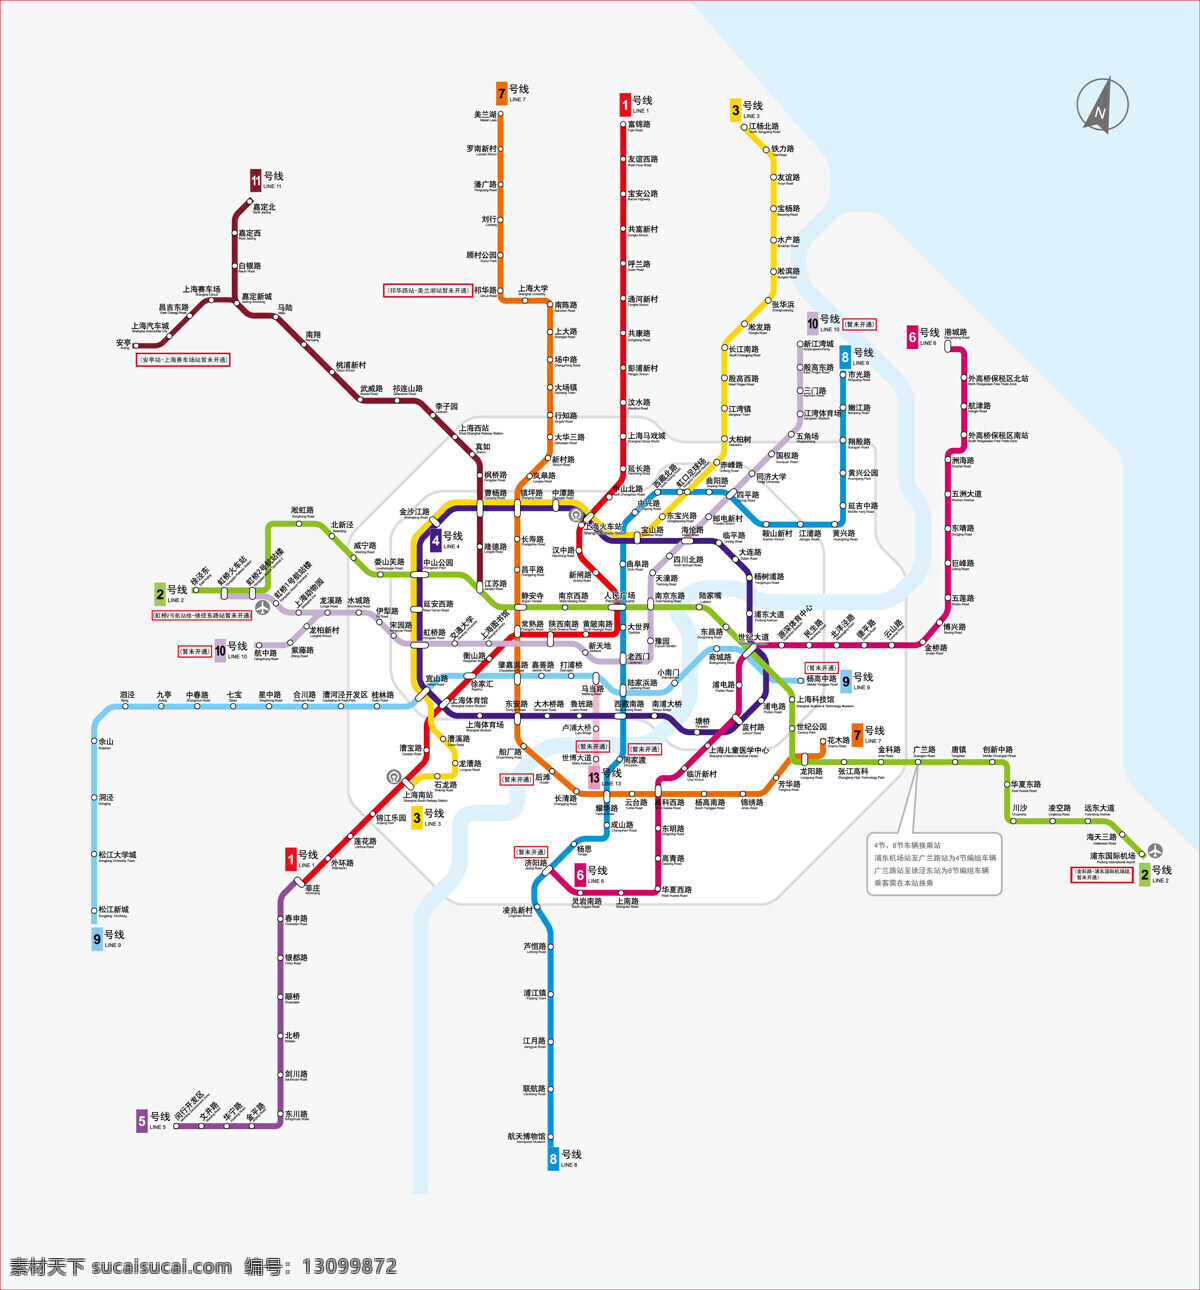 2010 年 上海市 地铁 运营 线路图 地图 上海 现代科技